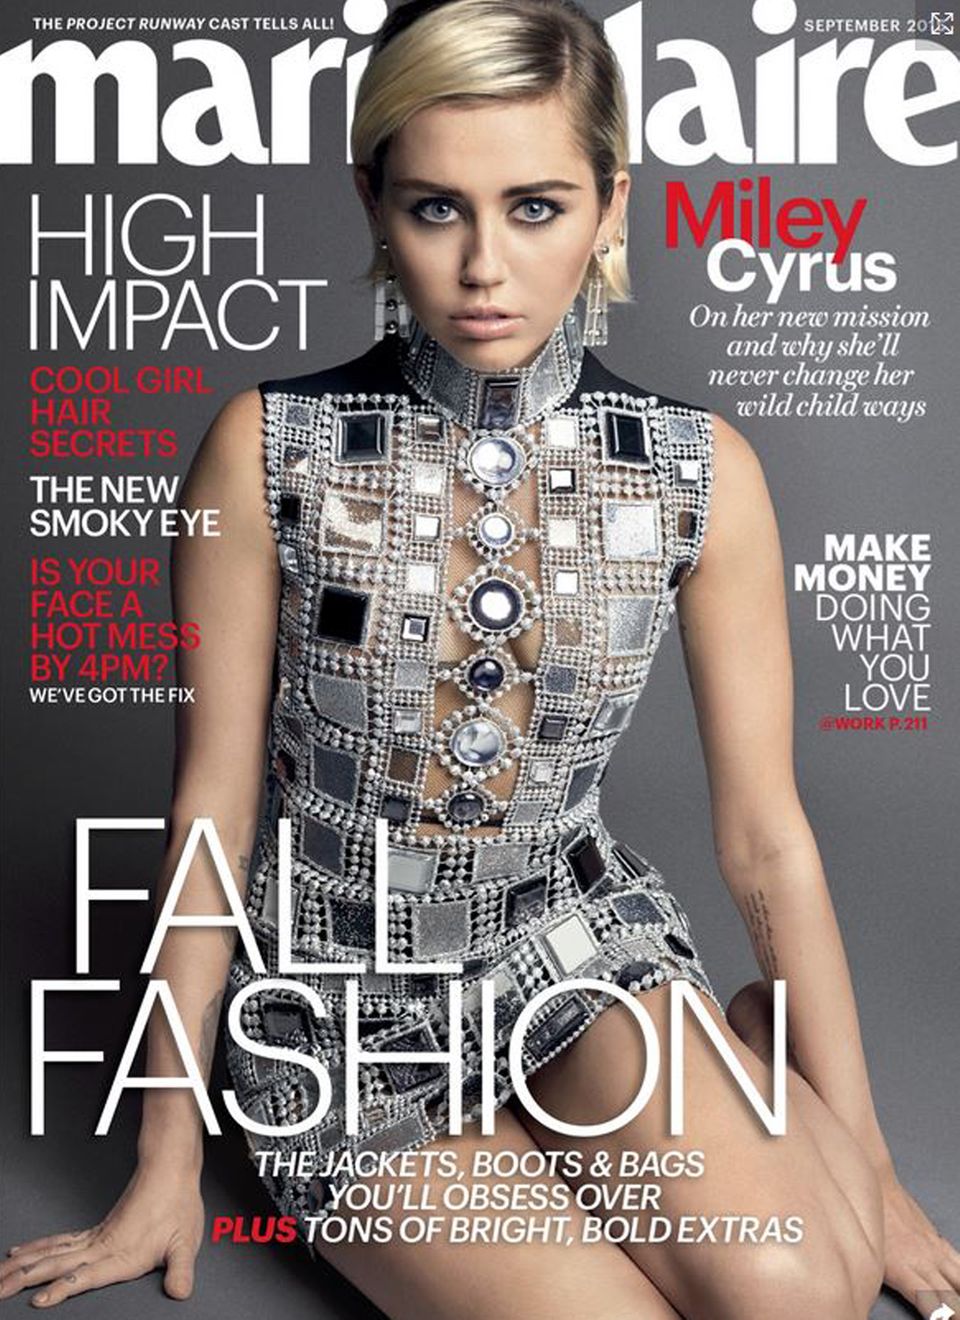 Die Septemberausgabe der Zeitschrift "Marie Claire" zeigt ein Shooting mit Miley Cyrus. Im Interview bekennt sie die drastischen Hintergründe ihres Hannah-Montana-Erfolgs und wie sie mit den Problemen heute klar kommt.